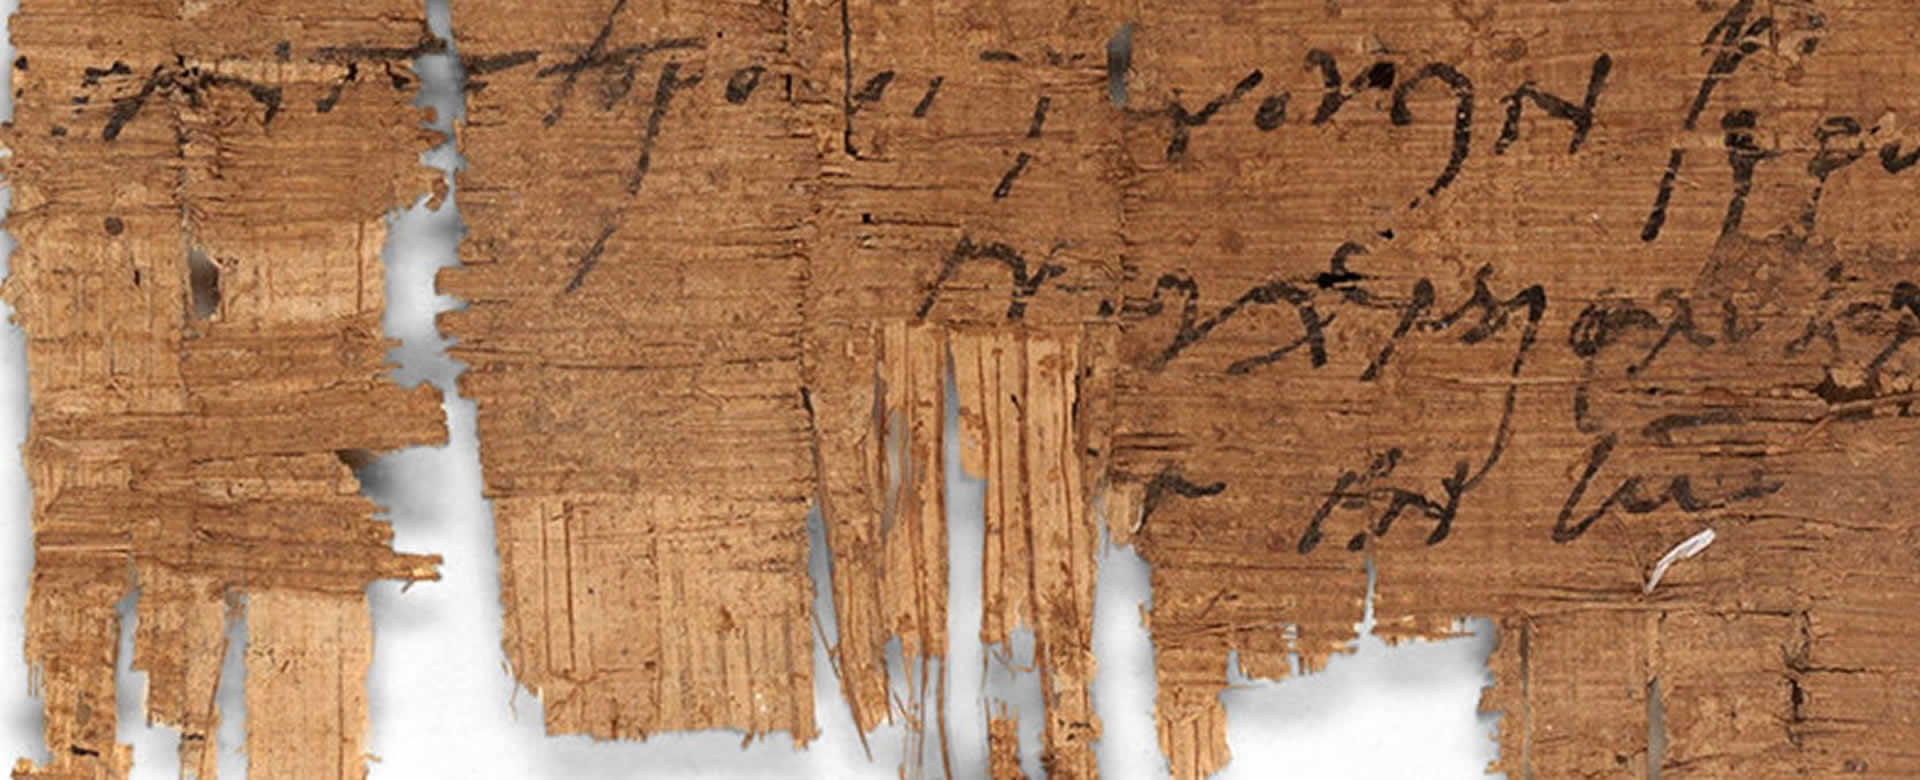 Descubren el manuscrito cristiano más antiguo conocido